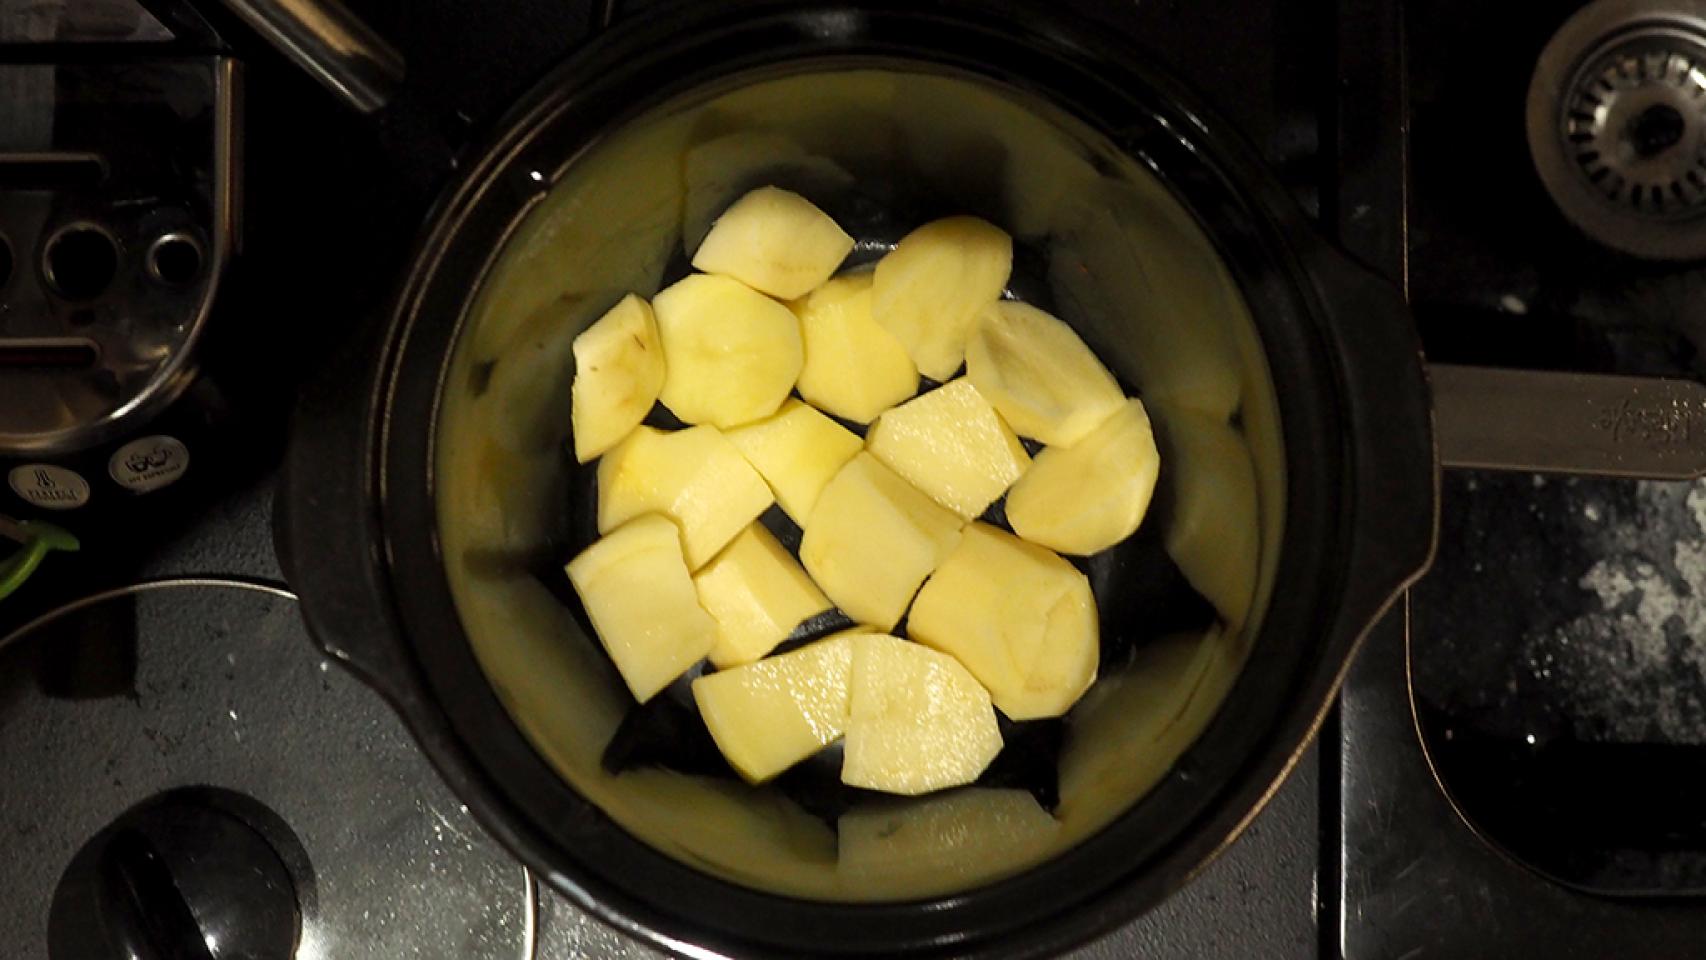 Trucos y consejos para cocinar con Crock Pot - Blog Conasi